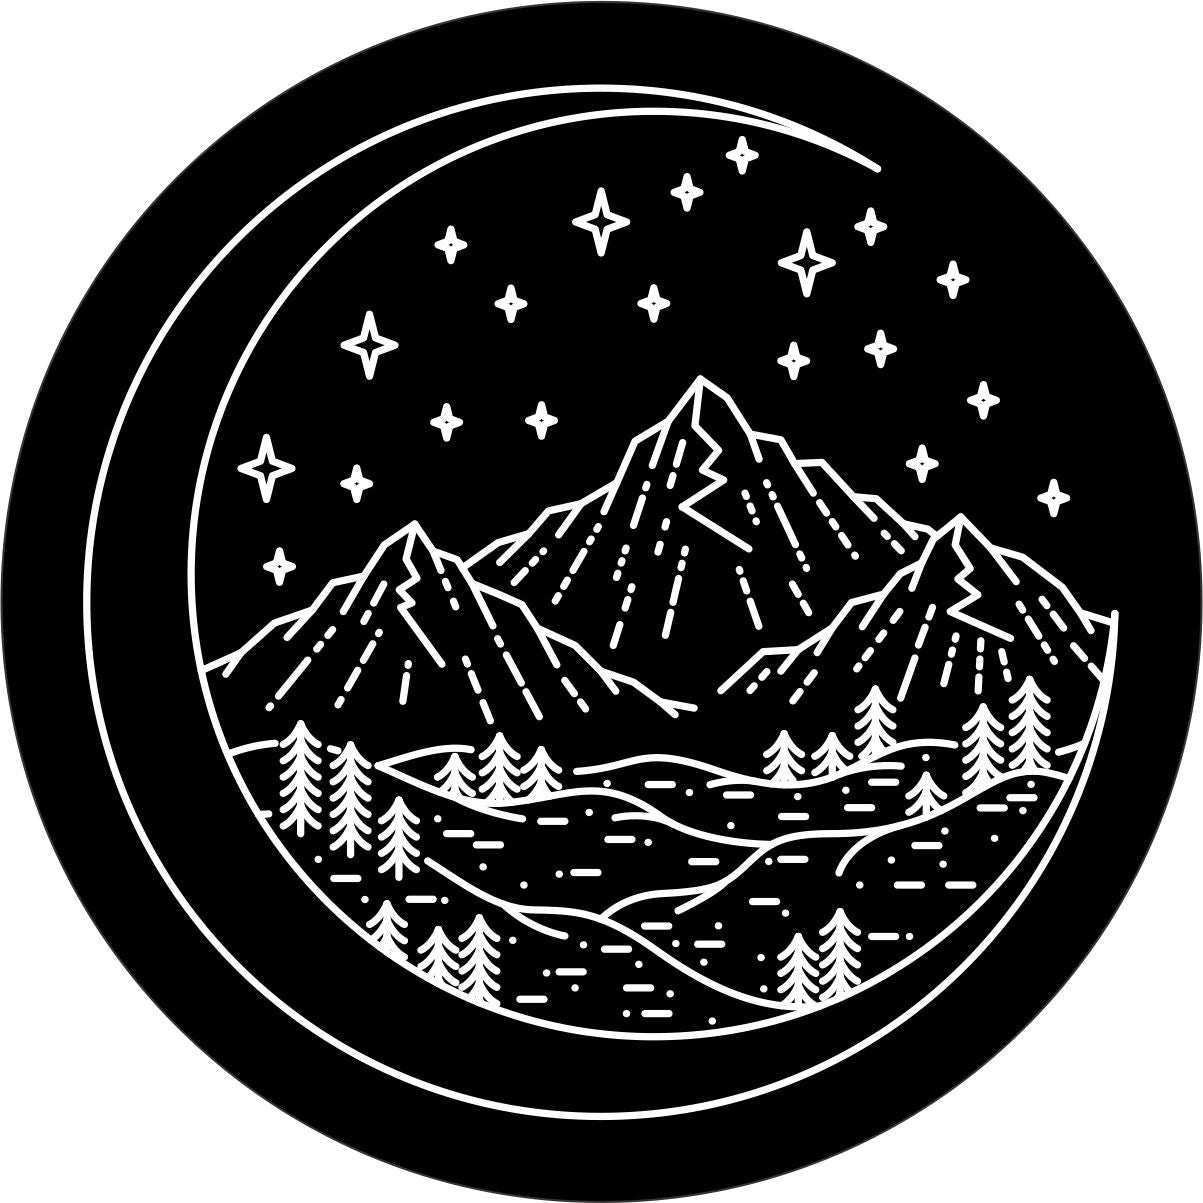 A unique spare tire cover design of a mountain scene designed int a crescent moon.